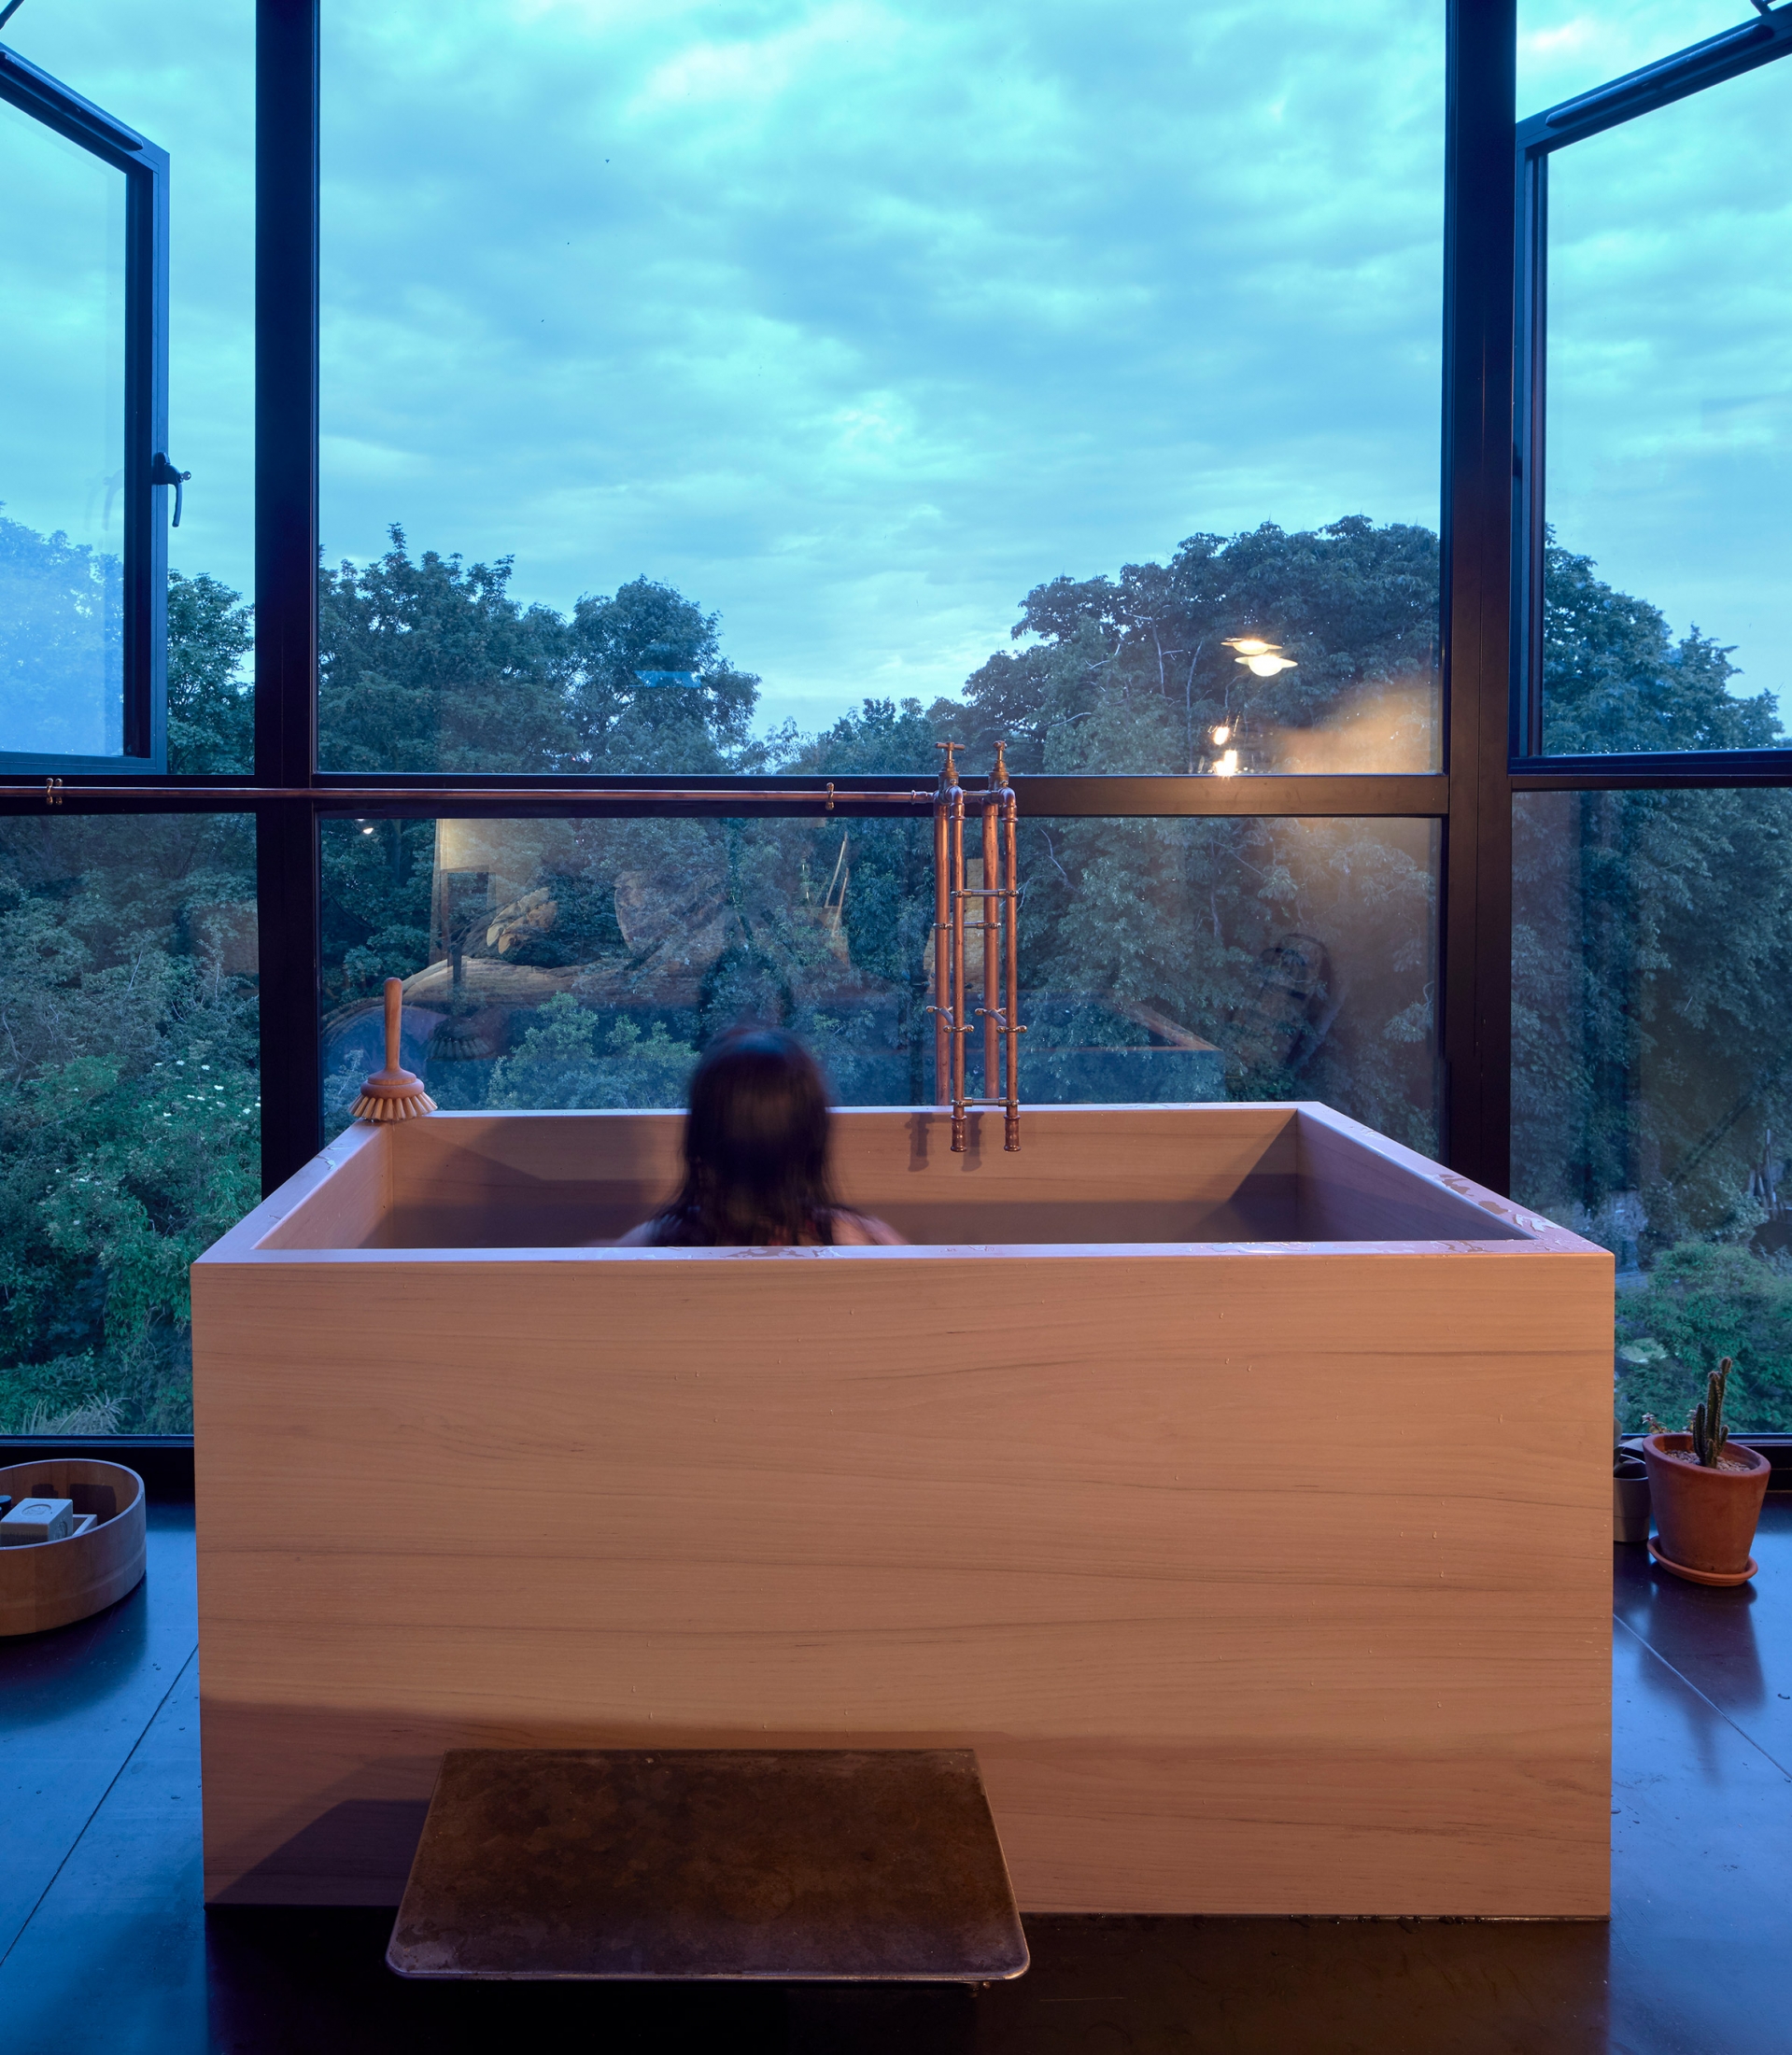 Chiếc bồn tắm đặt tựa vào cửa sổ lớn theo phong cách quen thuộc của xứ sở Phù Tang. Chủ nhân có thể nằm thư giãn và phóng tầm mắt chiêm ngưỡng thiên nhiên trong lành ngoài ô cửa.